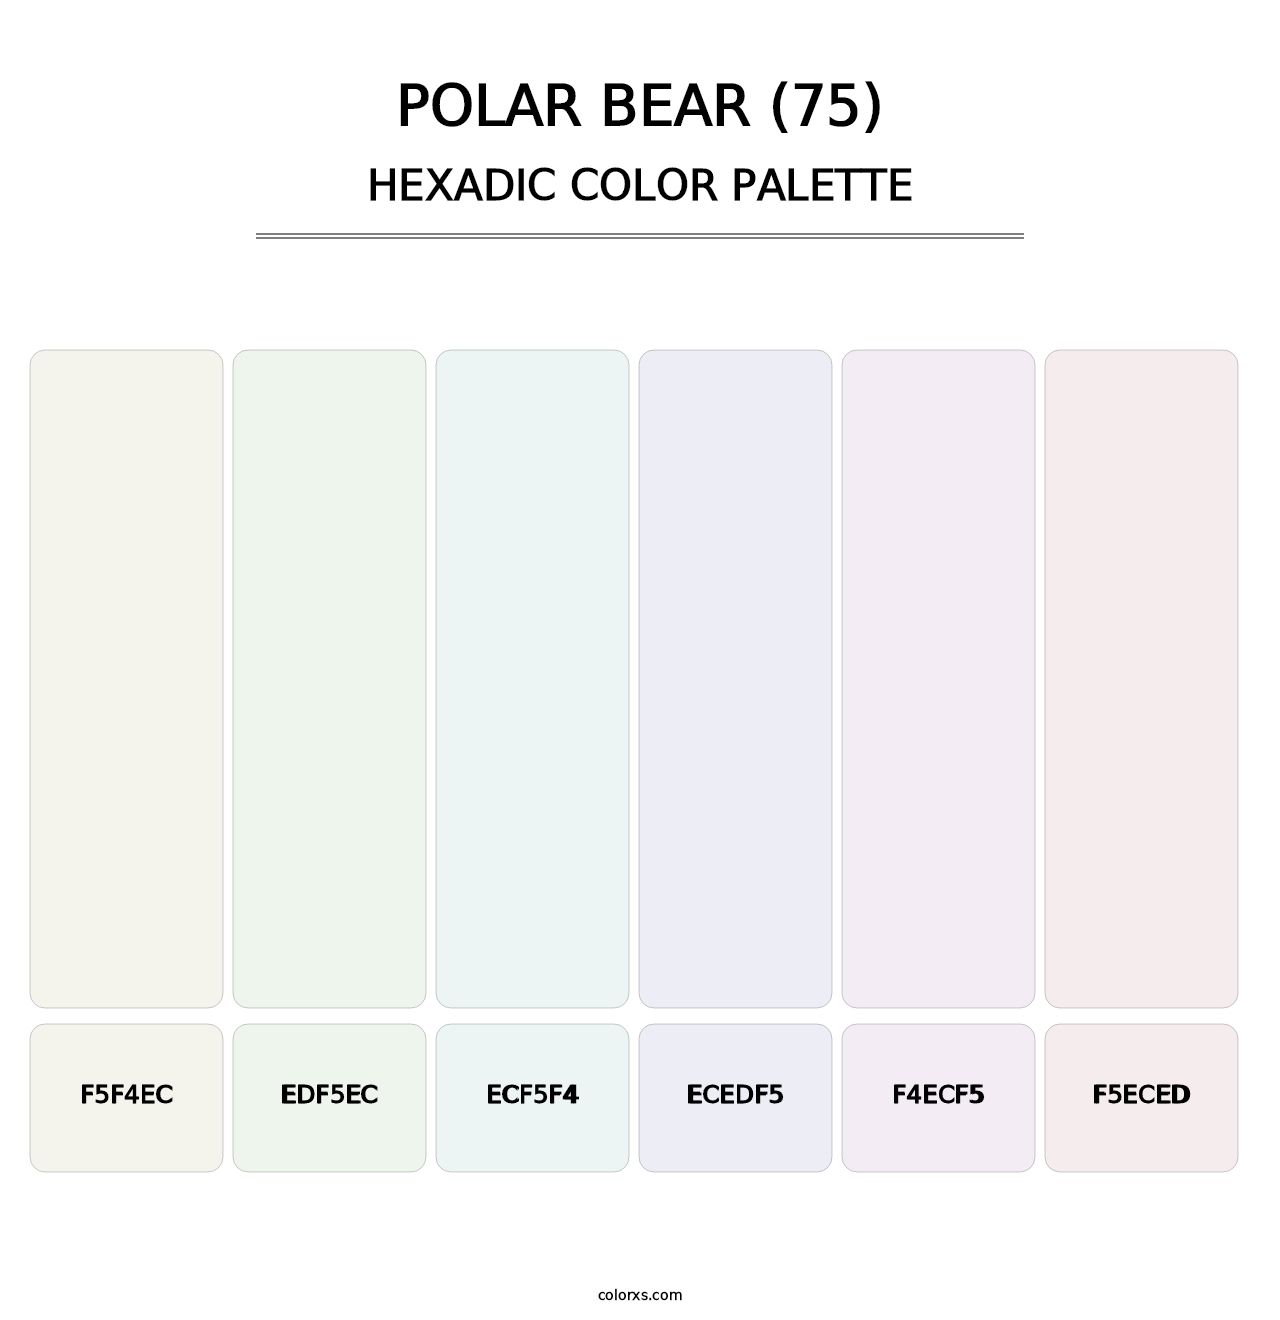 Polar Bear (75) - Hexadic Color Palette